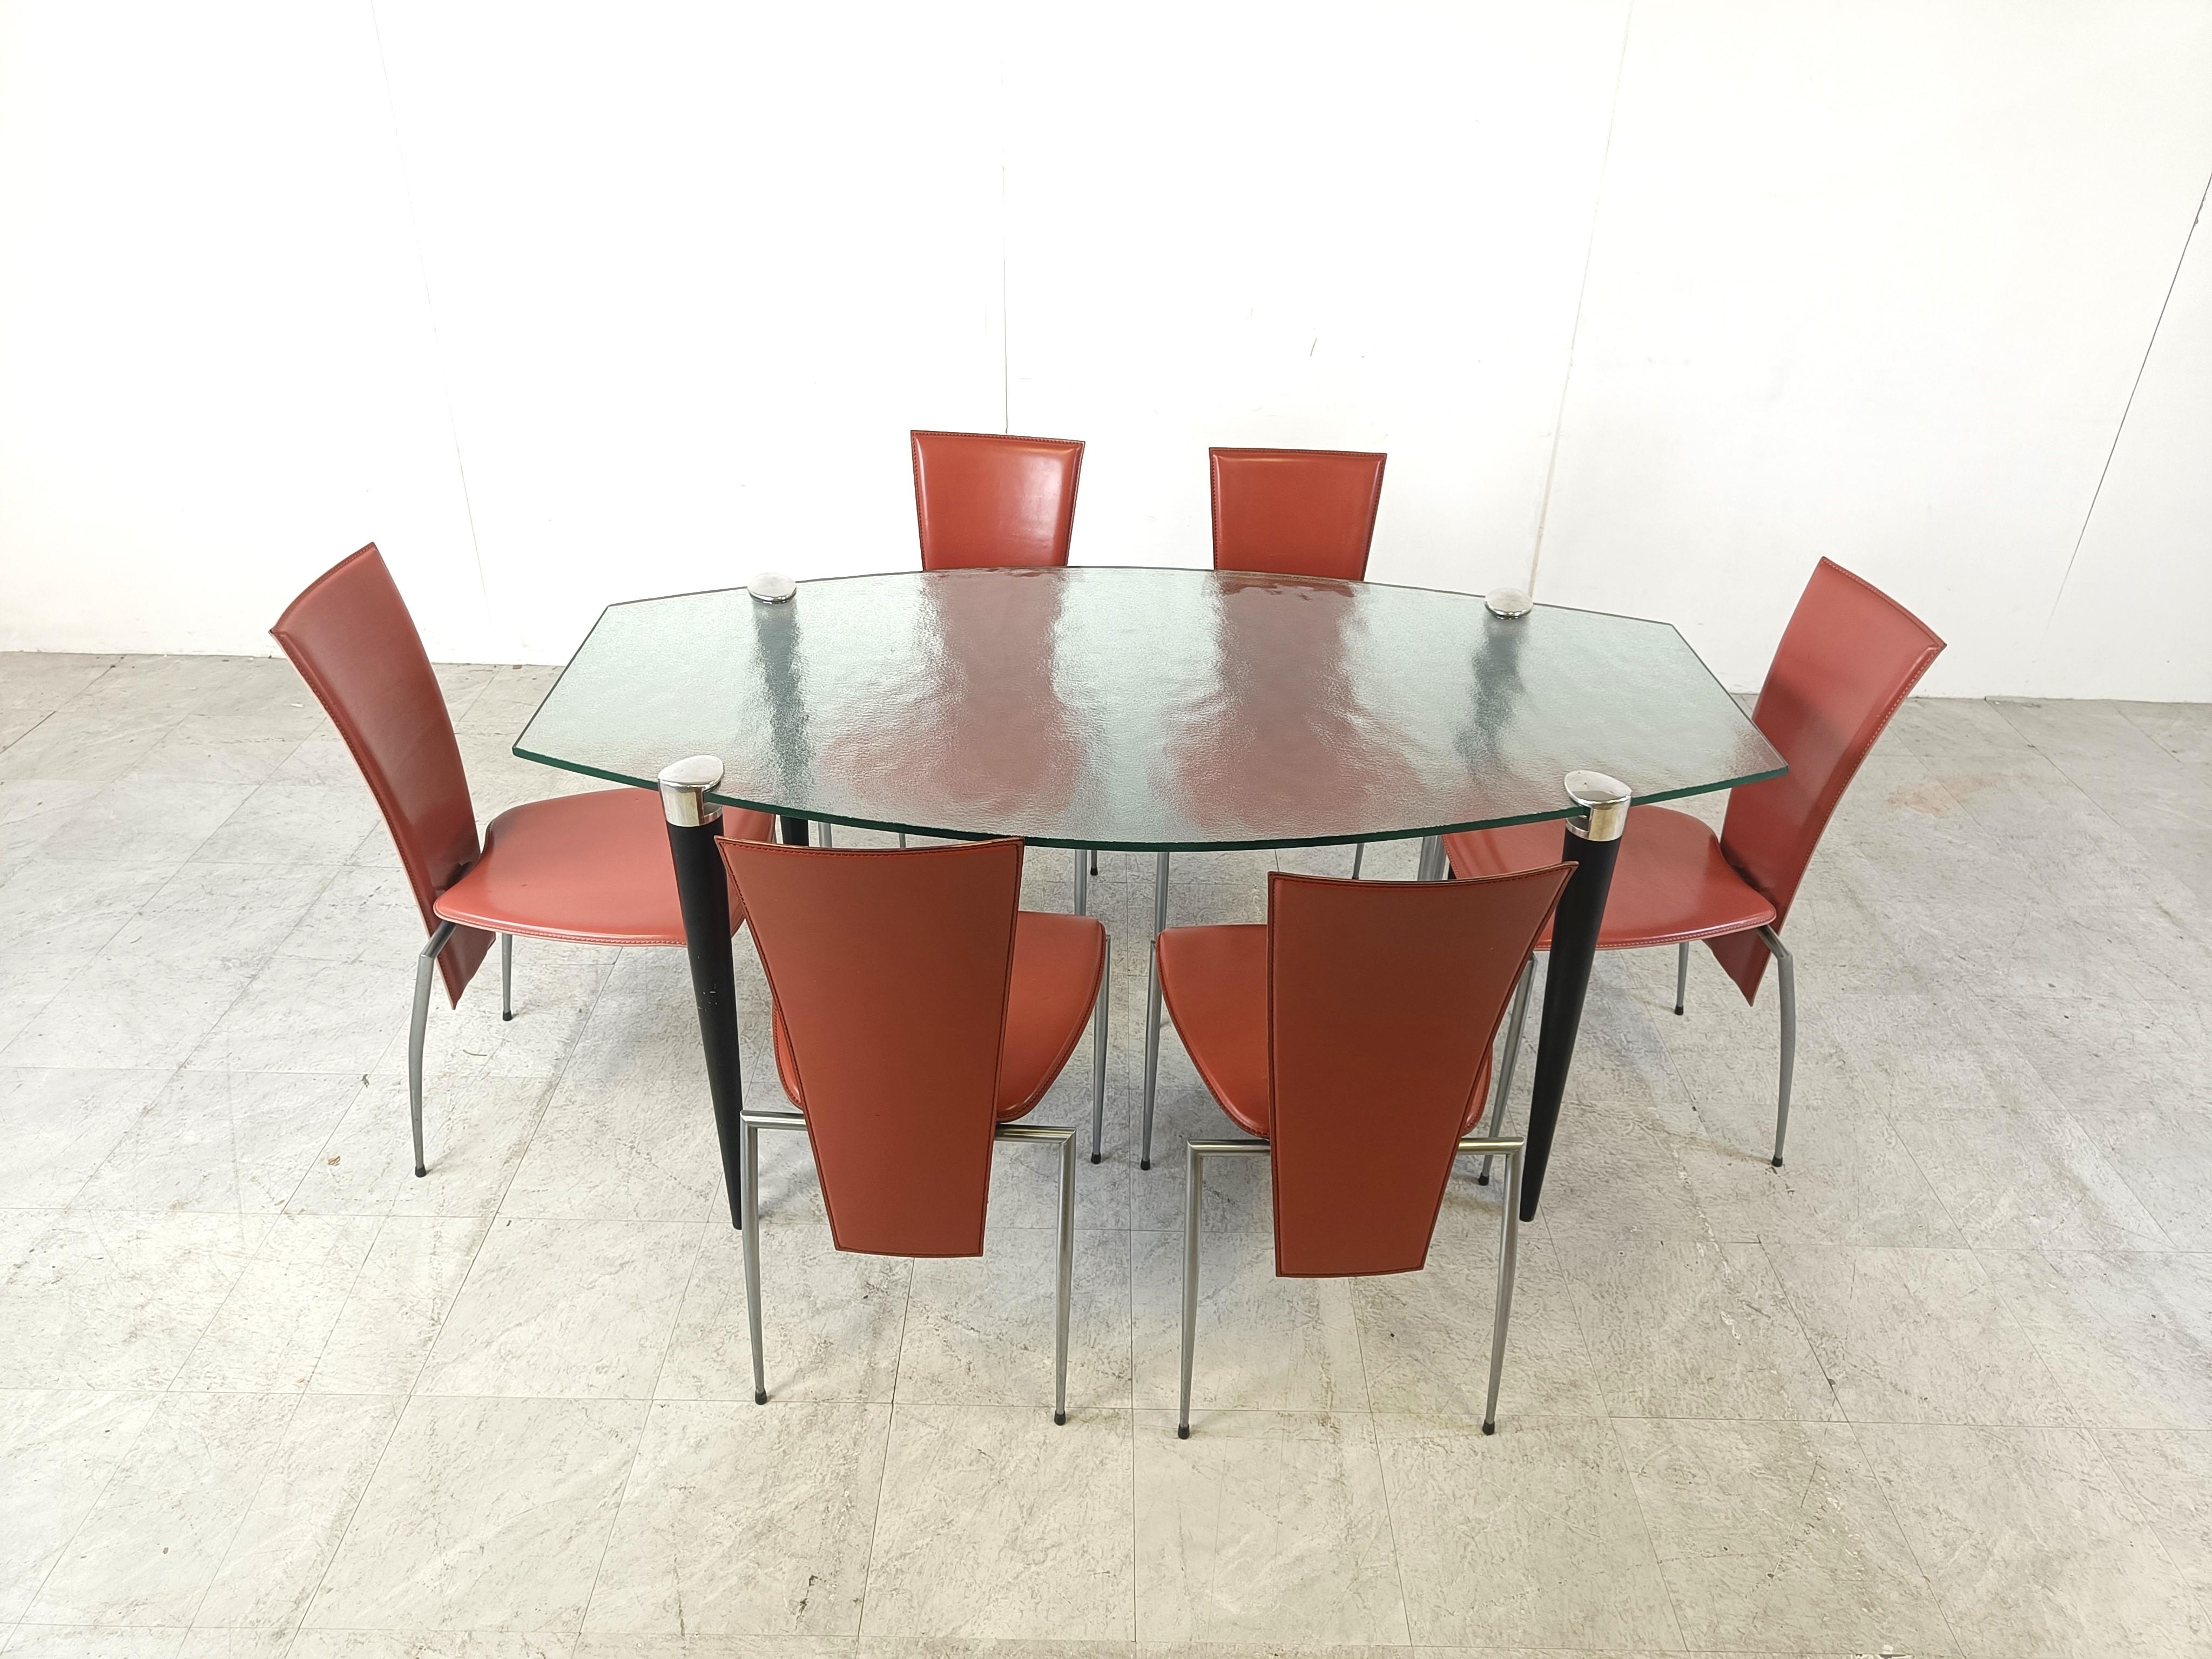 Table de salle à manger design italien des années 1990 composée d'un plateau en verre glacé de belle forme et de pieds coniques en bois et chromés.

Les pieds serrent le plateau de la table grâce à une seule vis sur chaque pied.

Design/One